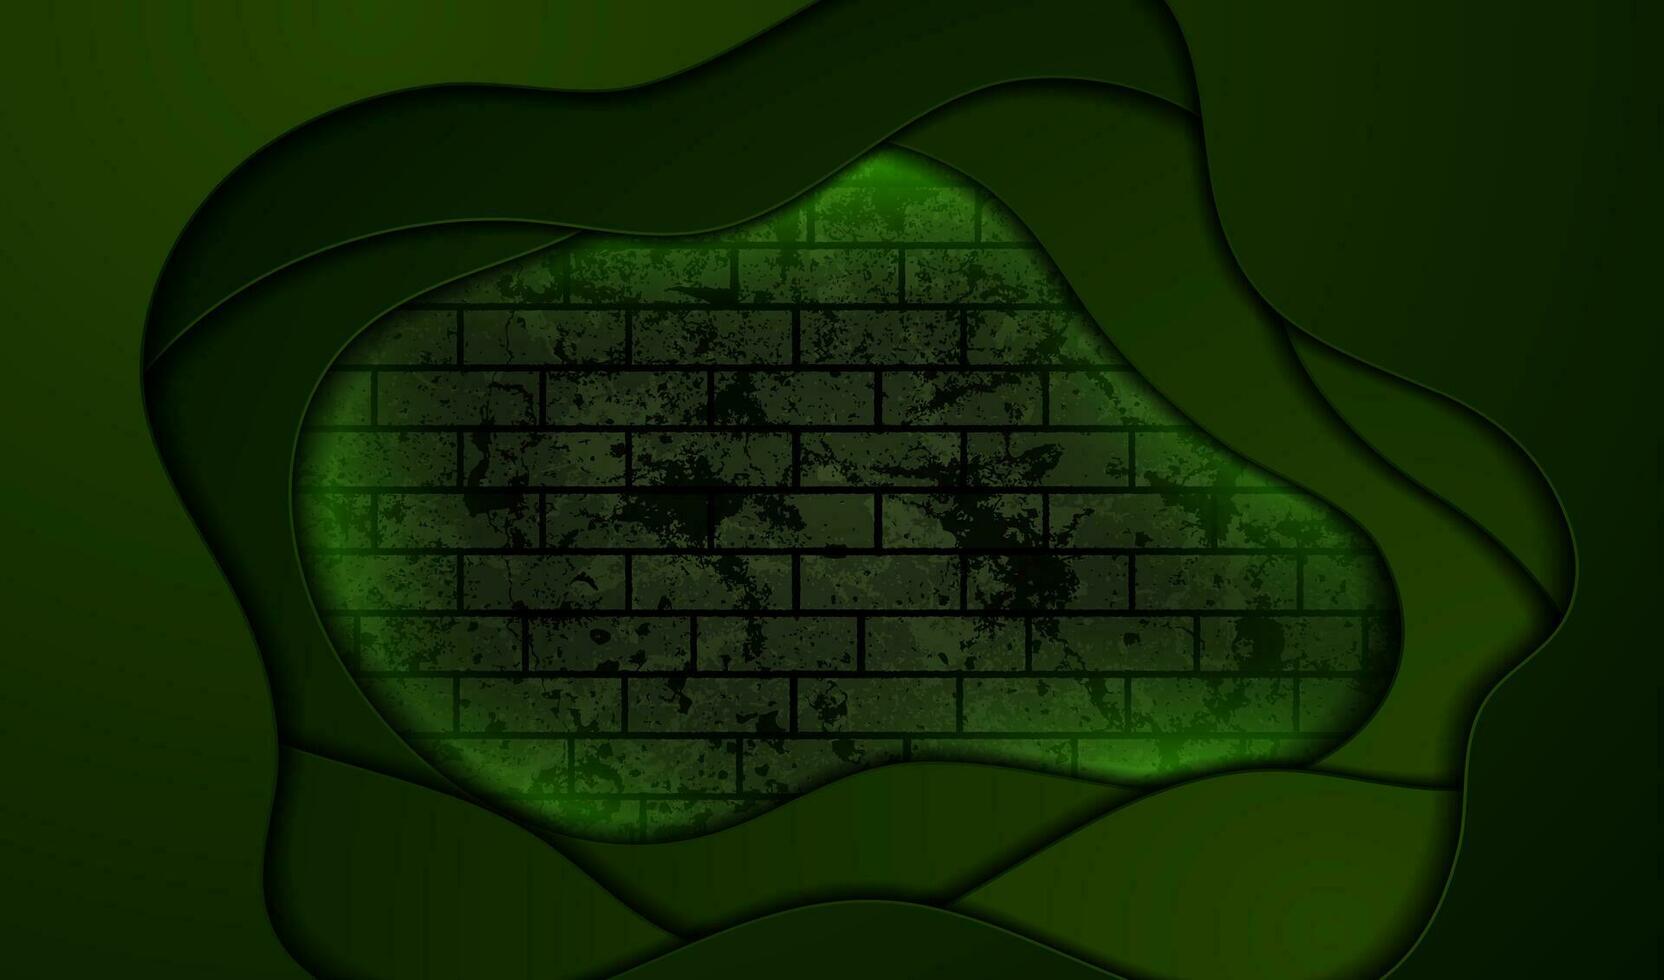 mörk grön lysande vågor på grunge tegel vägg bakgrund vektor